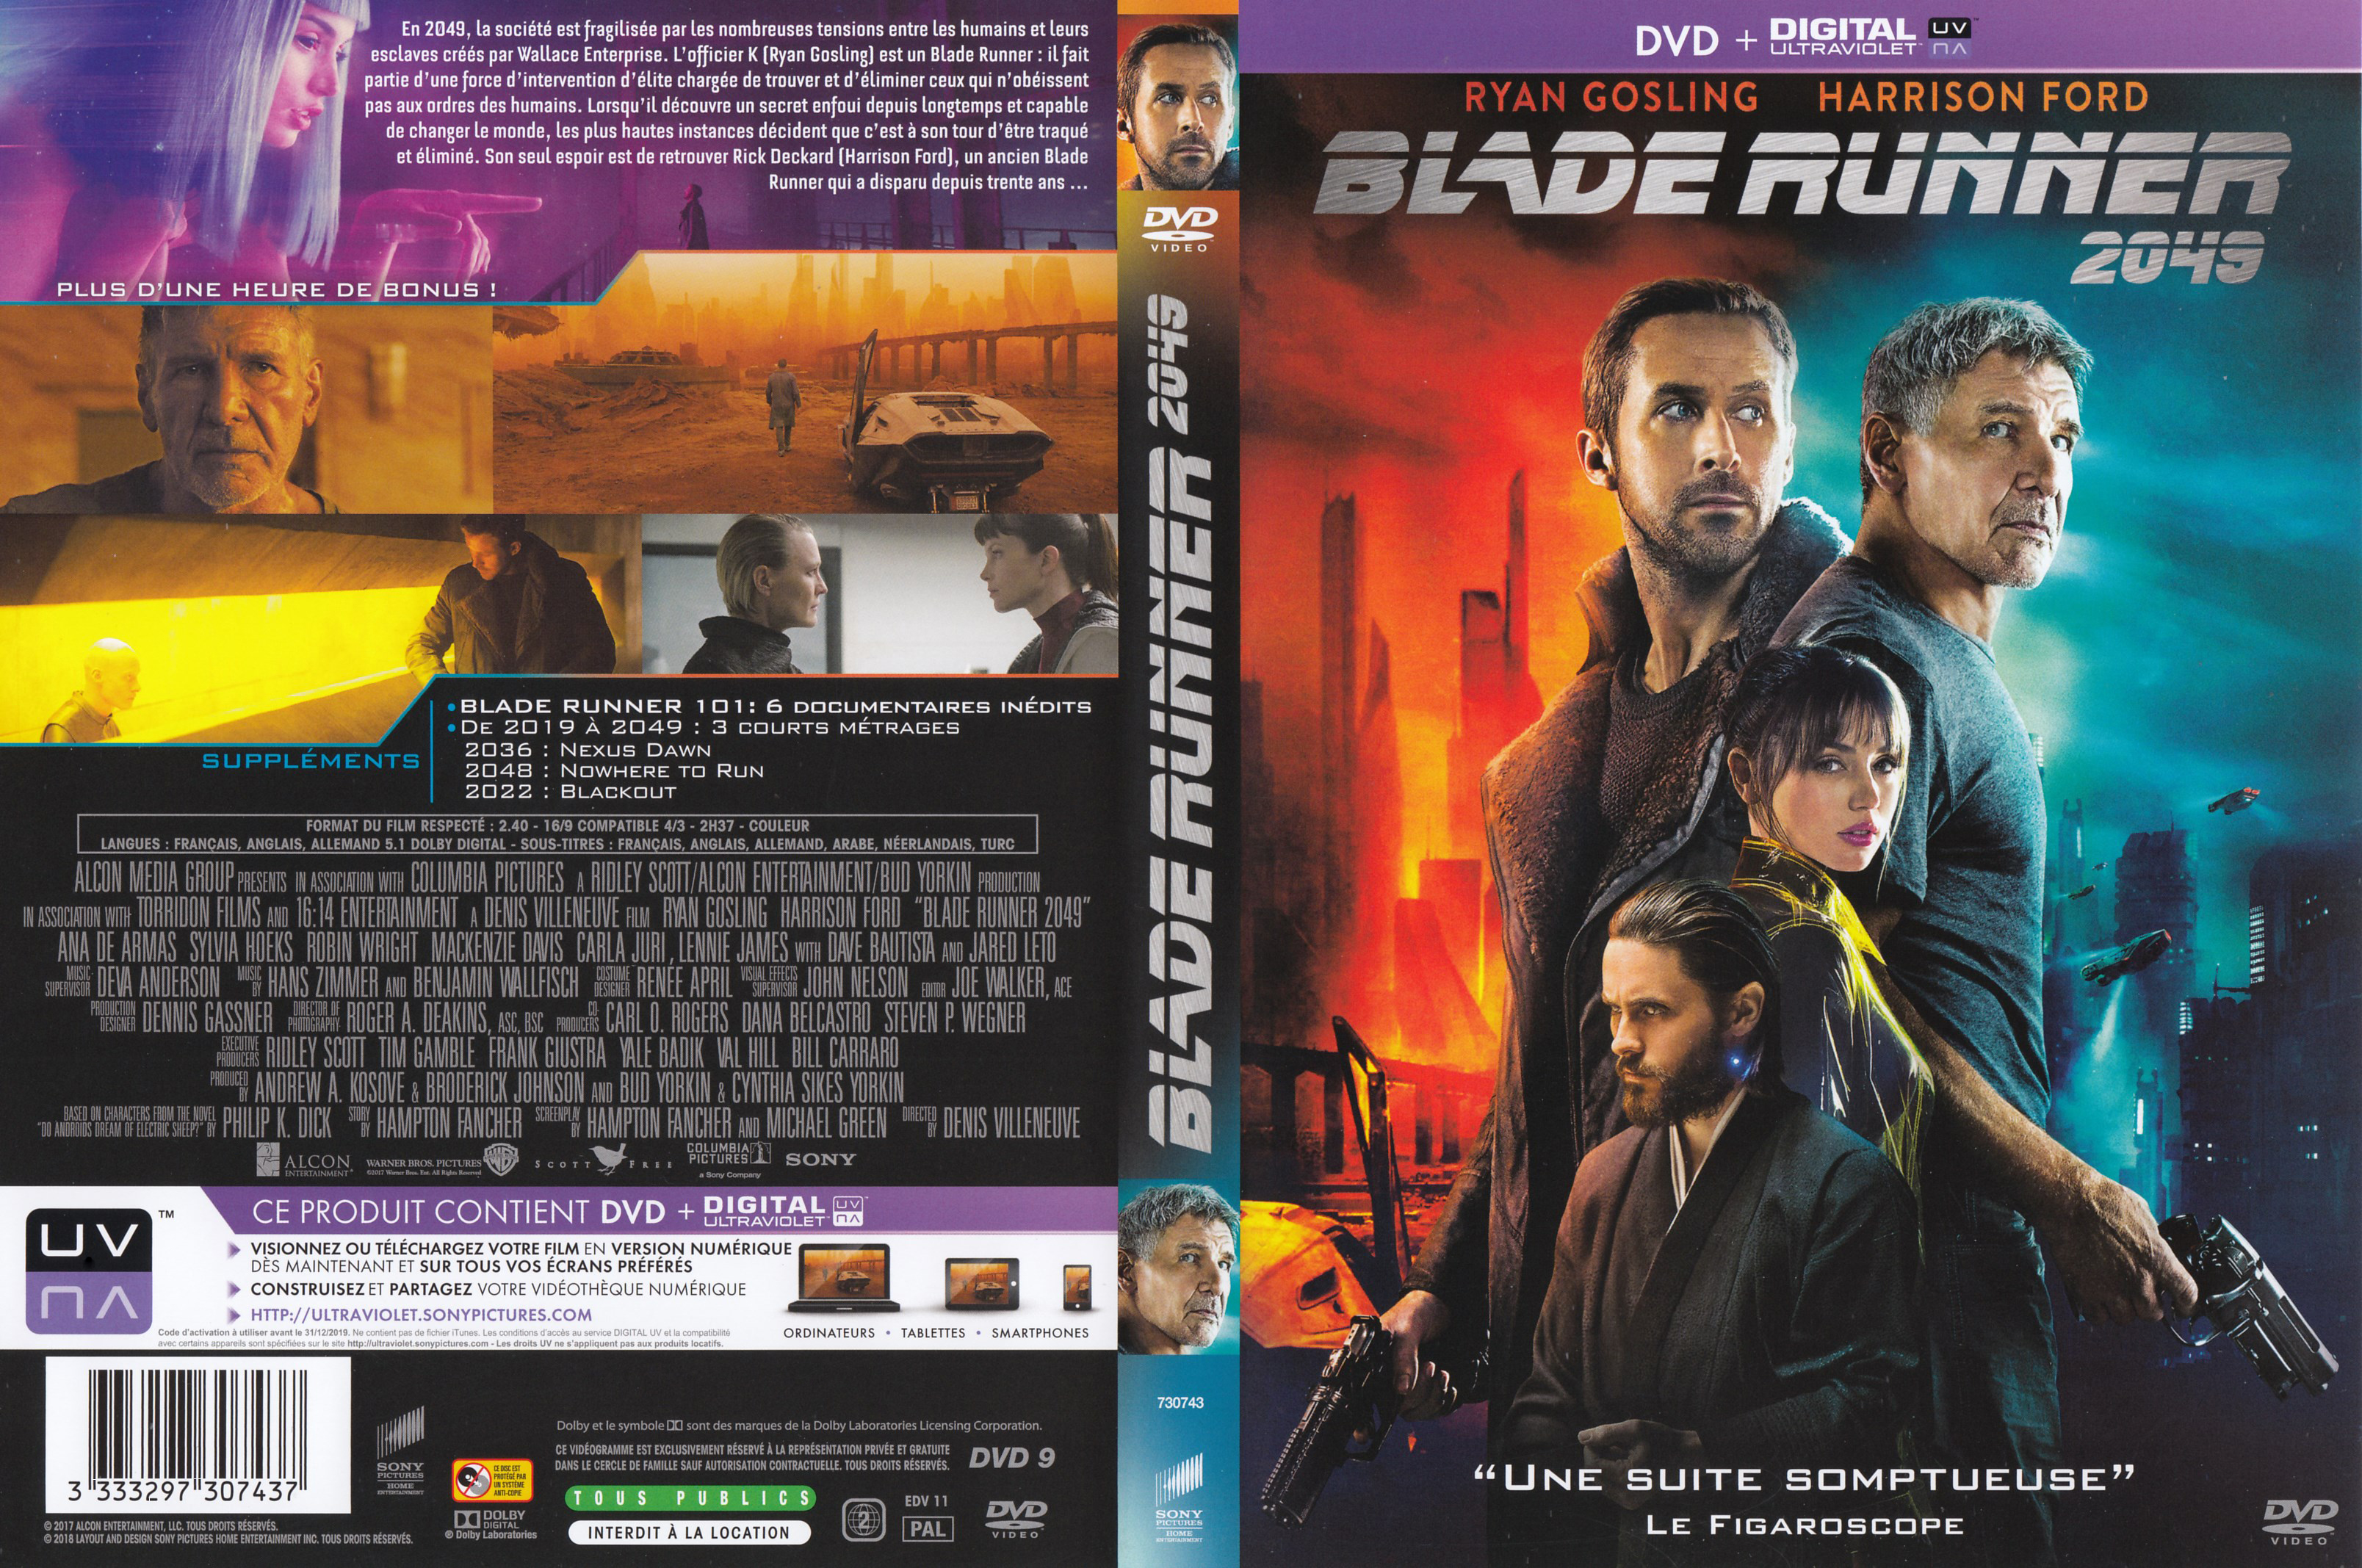 Jaquette DVD Blade Runner 2049